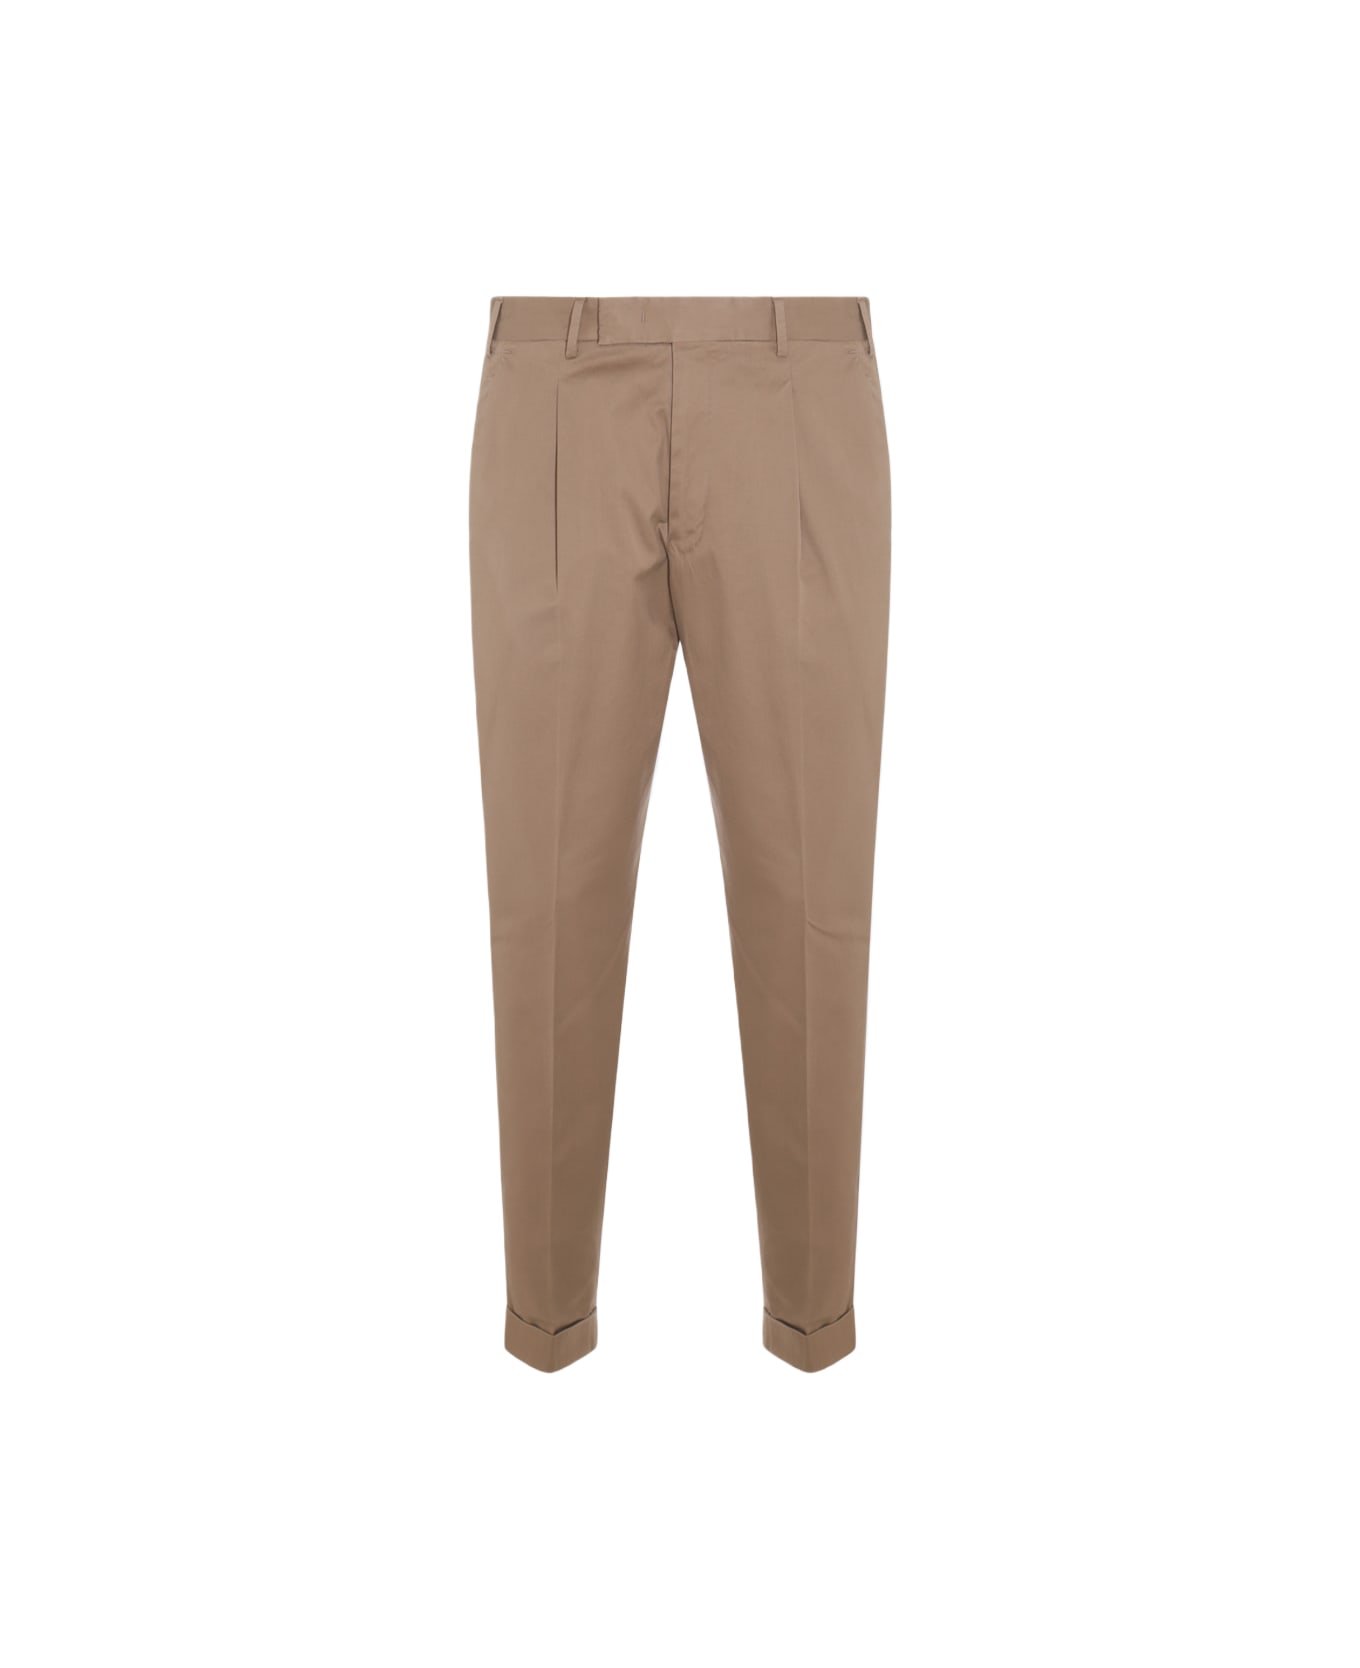 PT Torino Beige Cotton Pants - Coloniale